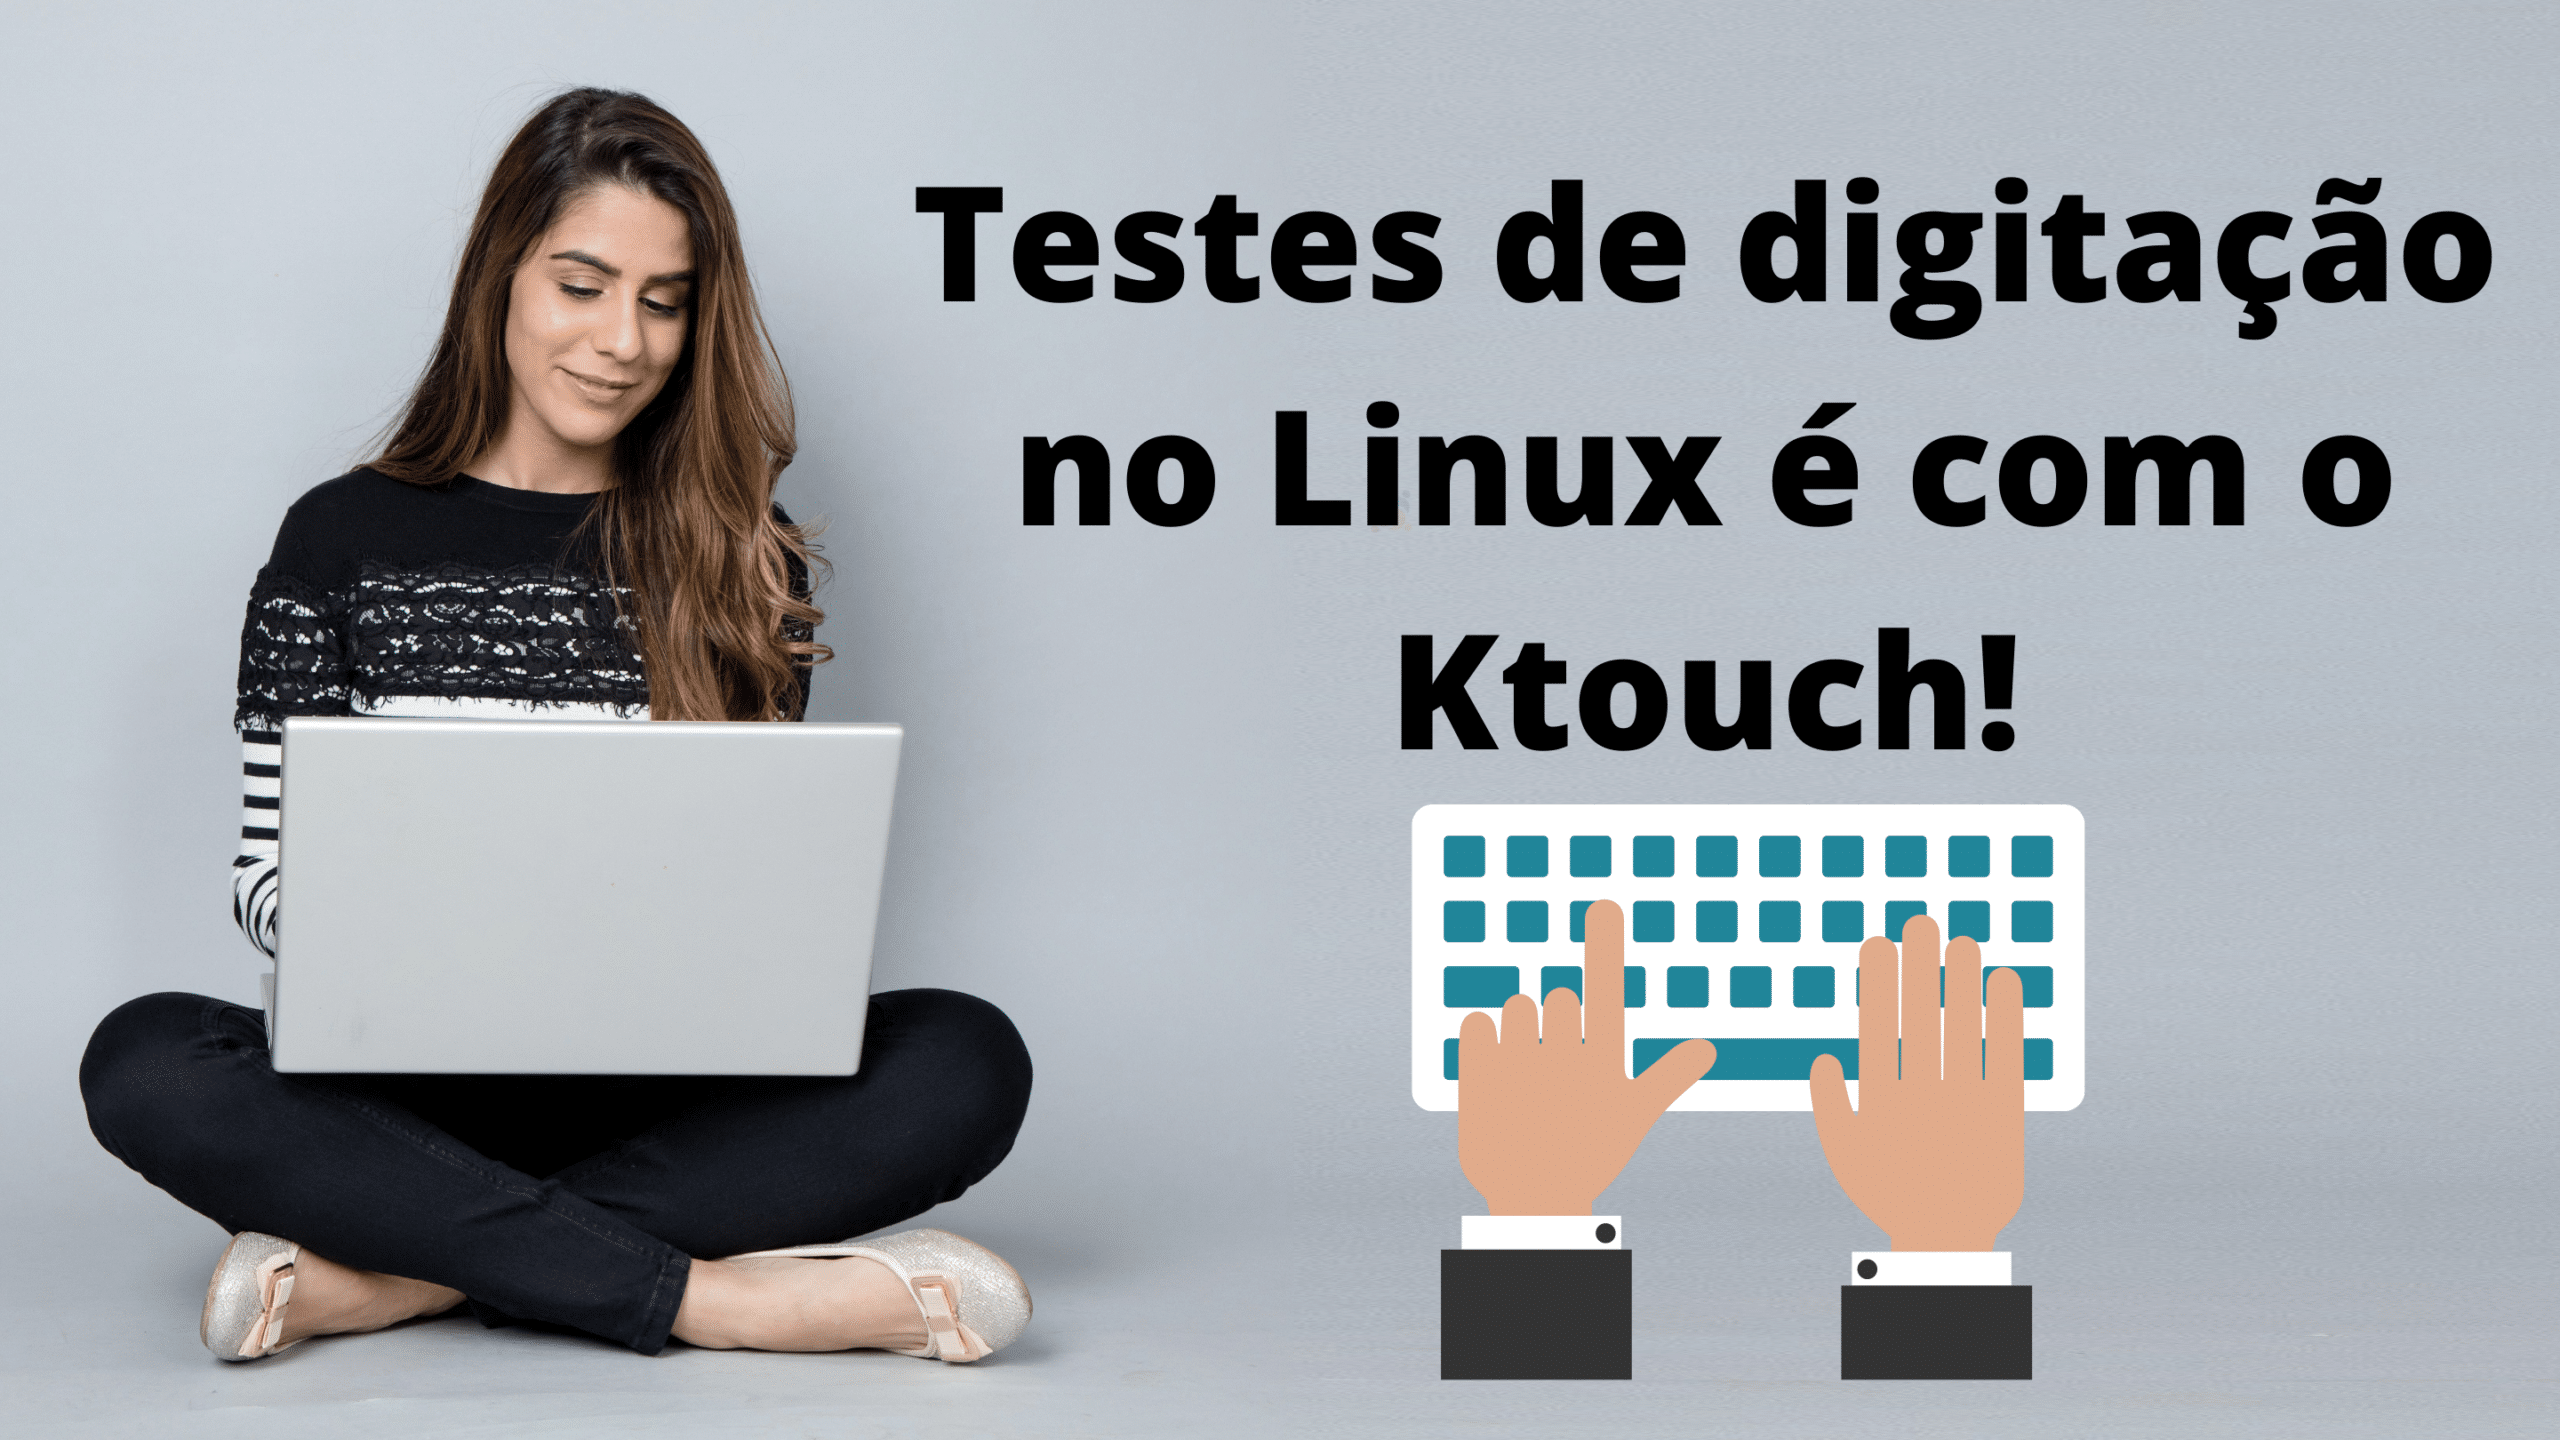 ktouch-aplicativo-para-teste-de-digitacao-no-linux-o-popular-teste-de-datilografia